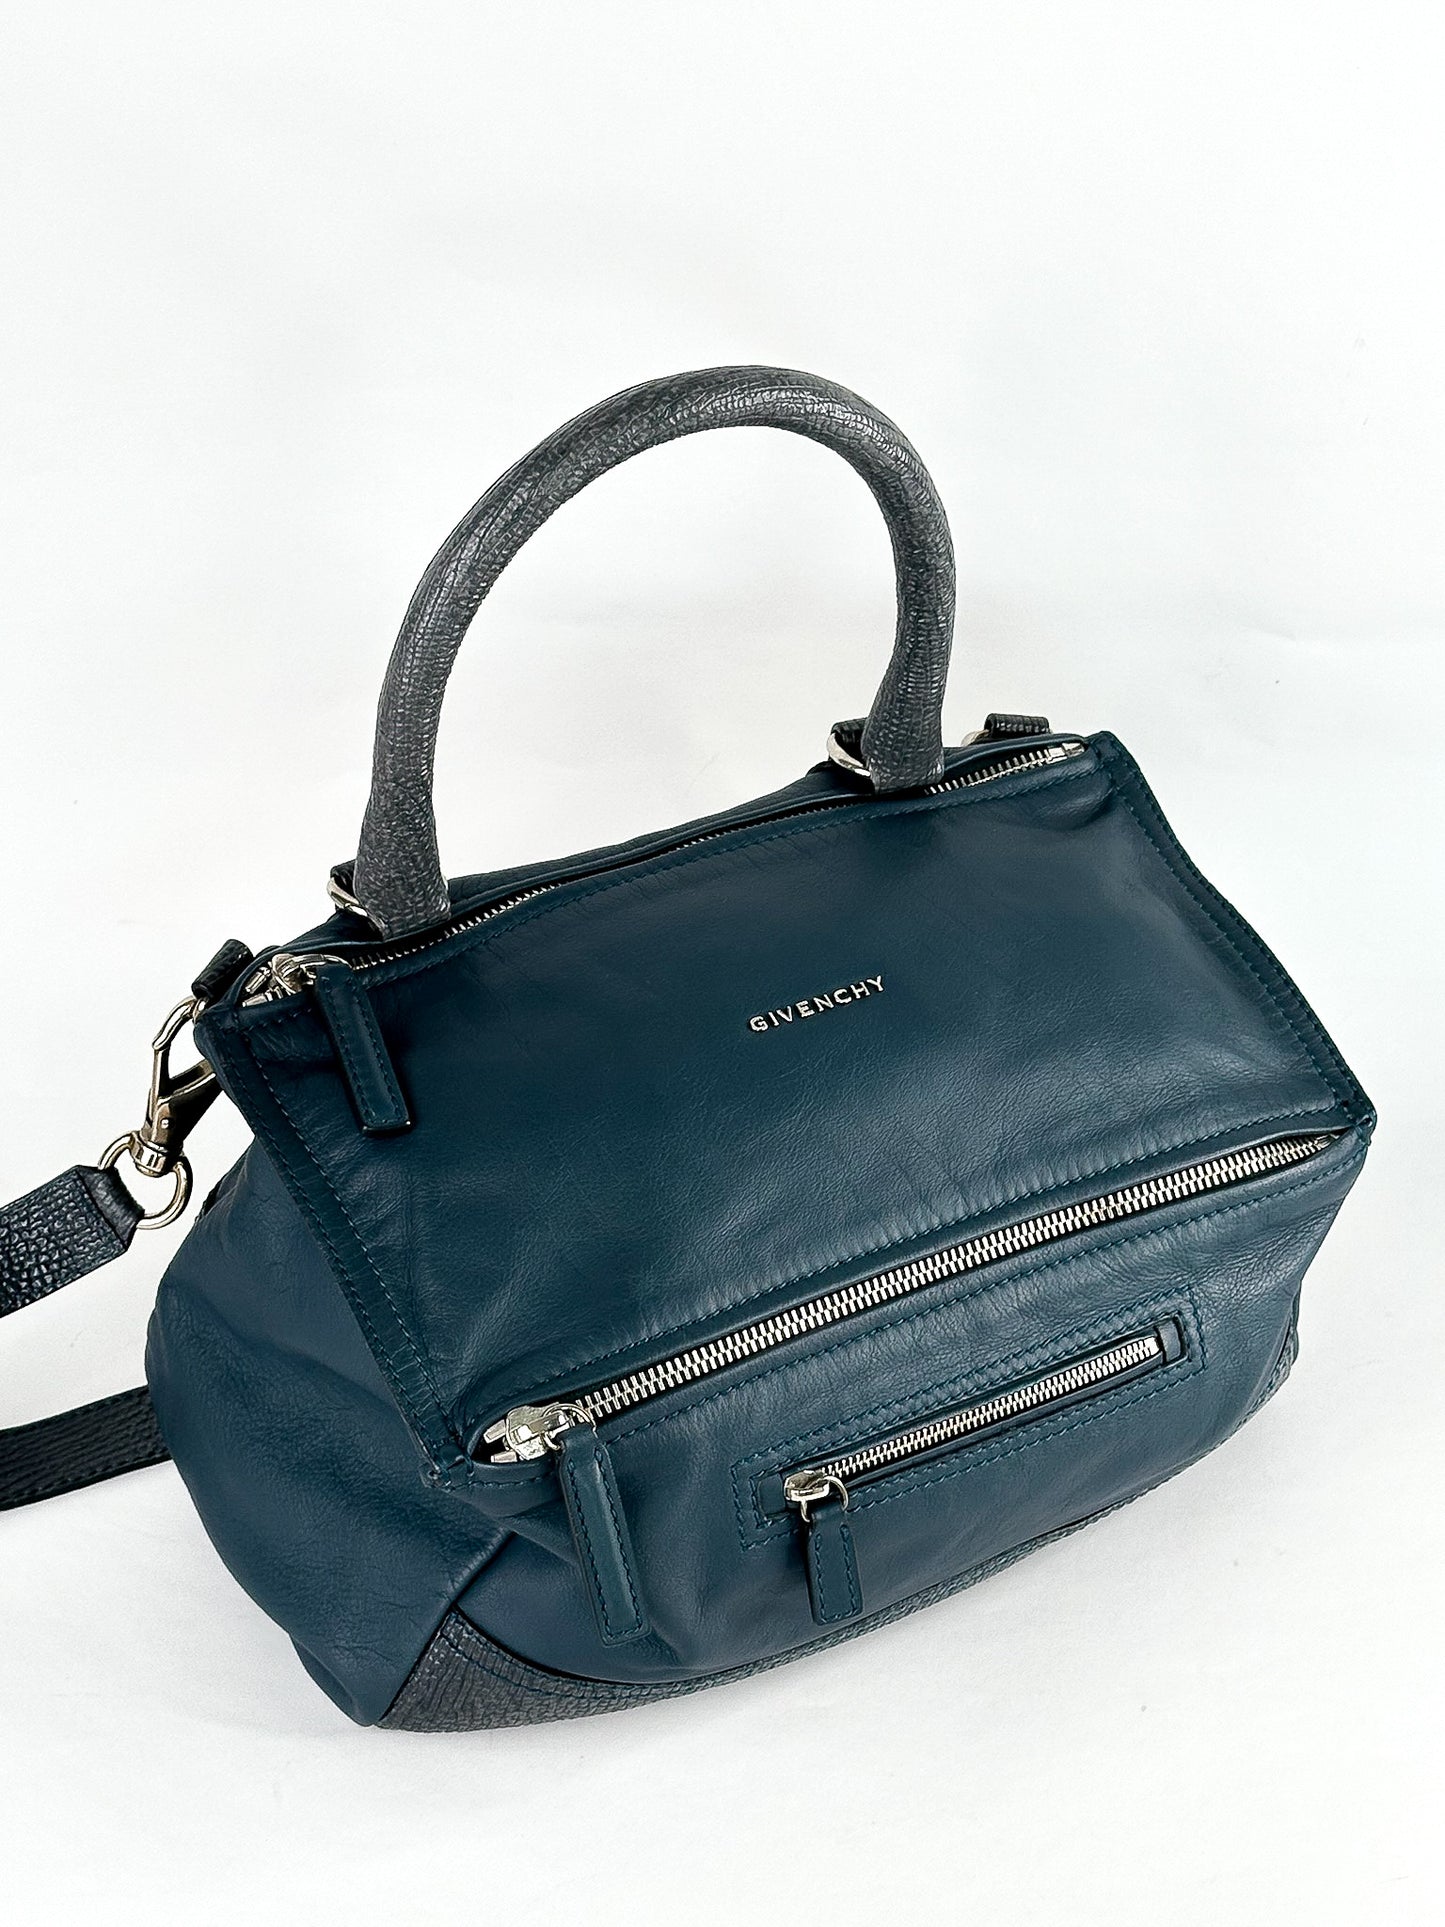 Givenchy Pandora Bag Medium